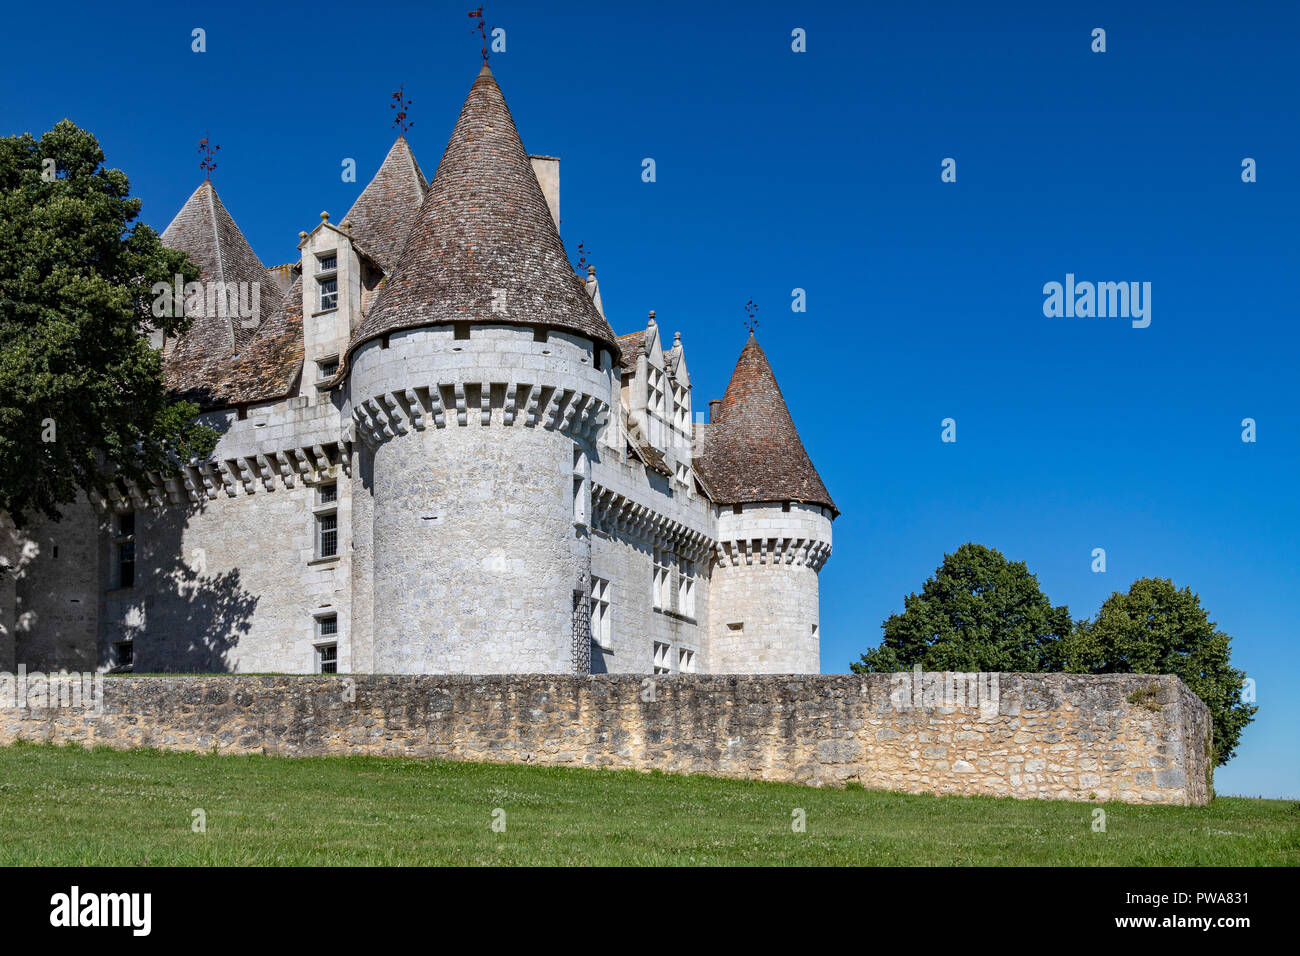 Château de Monbazillac près de la ville de Bergerac en Dordogne Domaine de l'Nouvelle-Aquitaine région de France. Banque D'Images